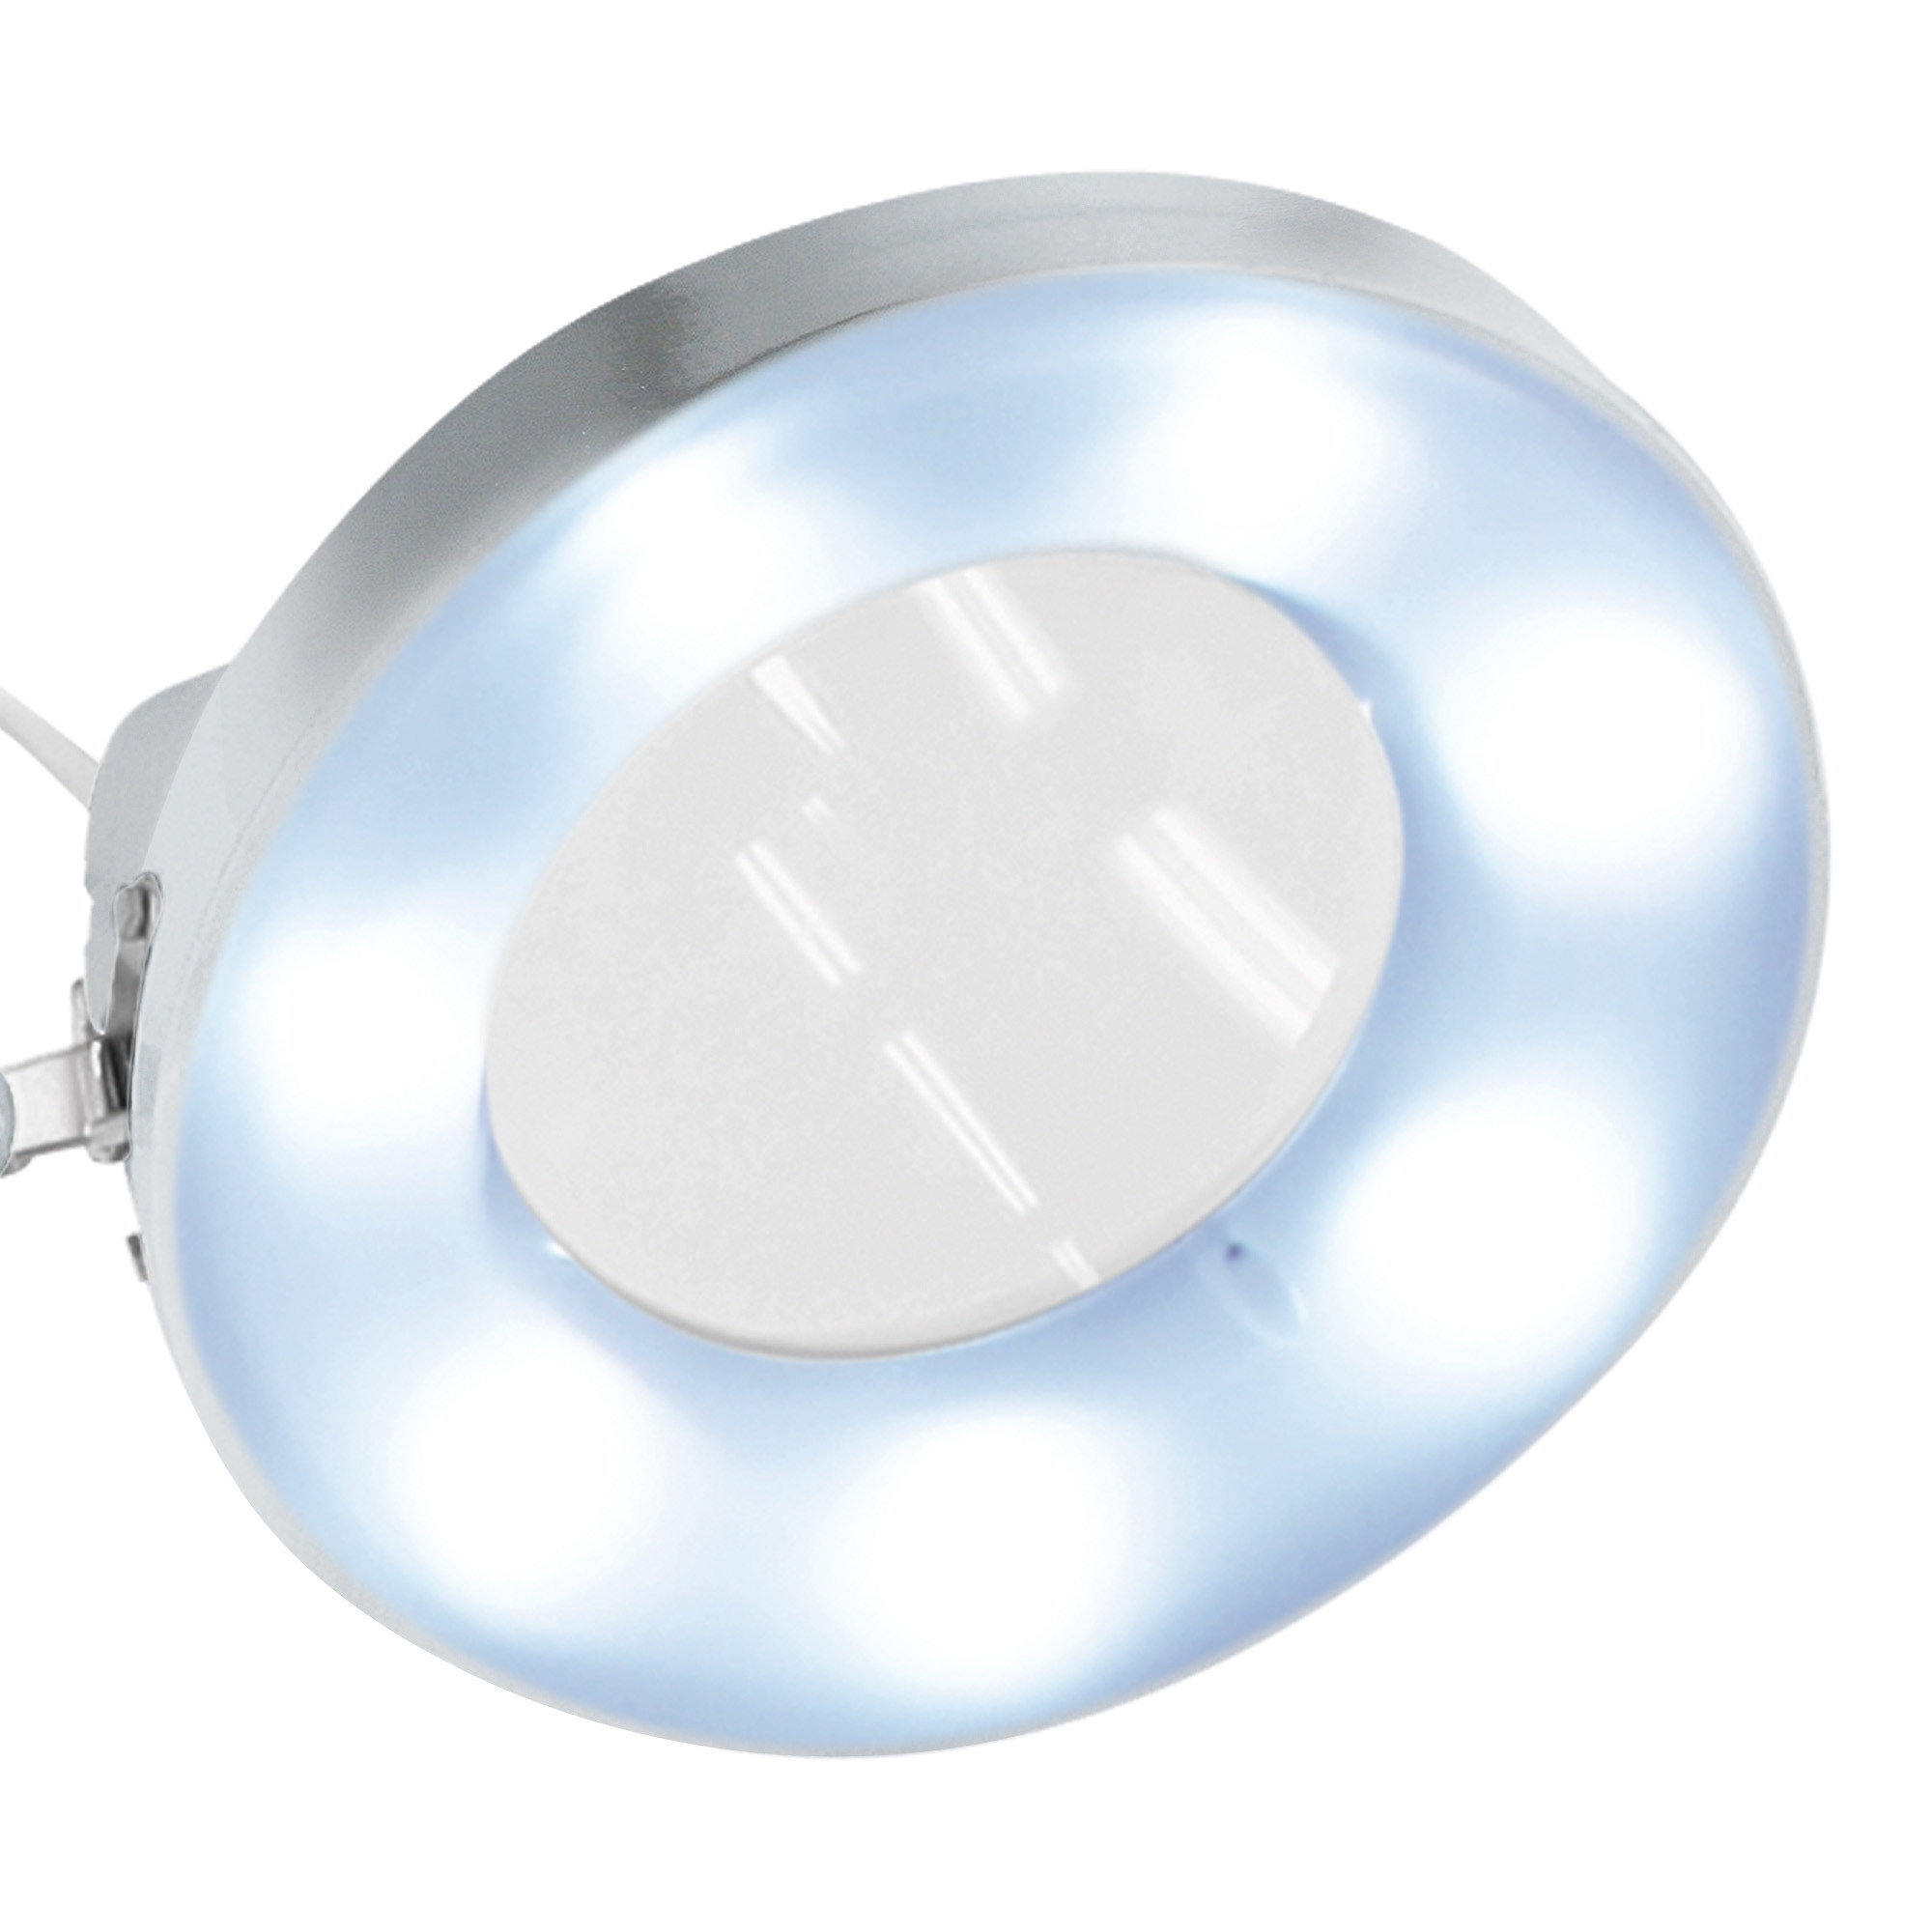 Afma Evo Lampe mit LED-Licht und verchromter 3-Diopter-Lupe